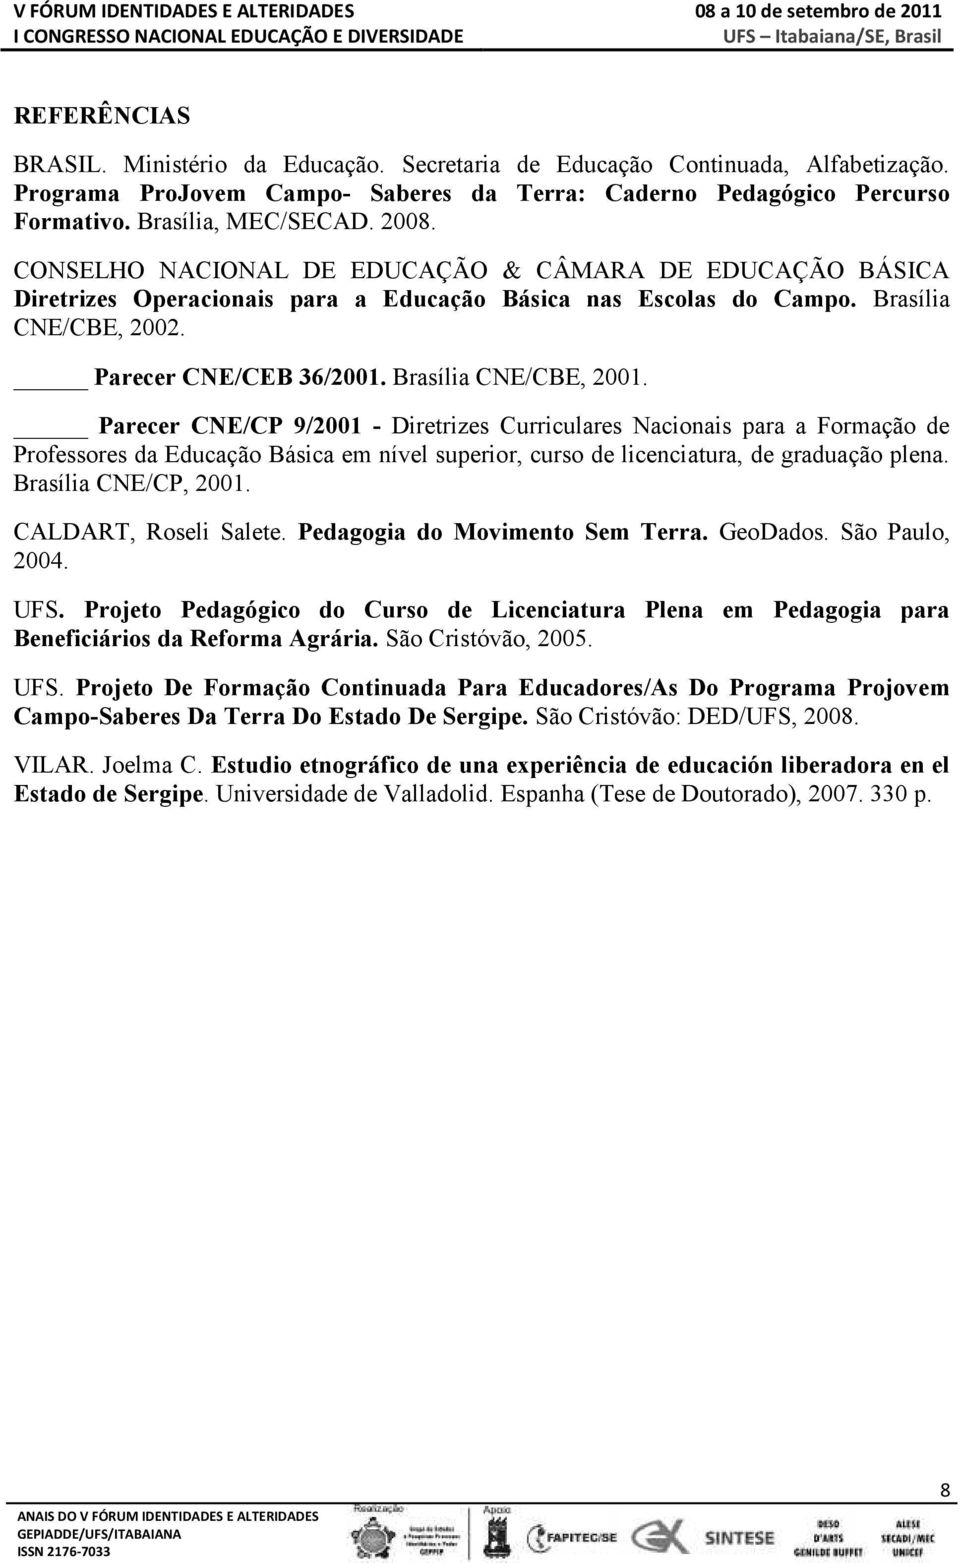 Brasília CNE/CBE, 2001. Parecer CNE/CP 9/2001 - Diretrizes Curriculares Nacionais para a Formação de Professores da Educação Básica em nível superior, curso de licenciatura, de graduação plena.